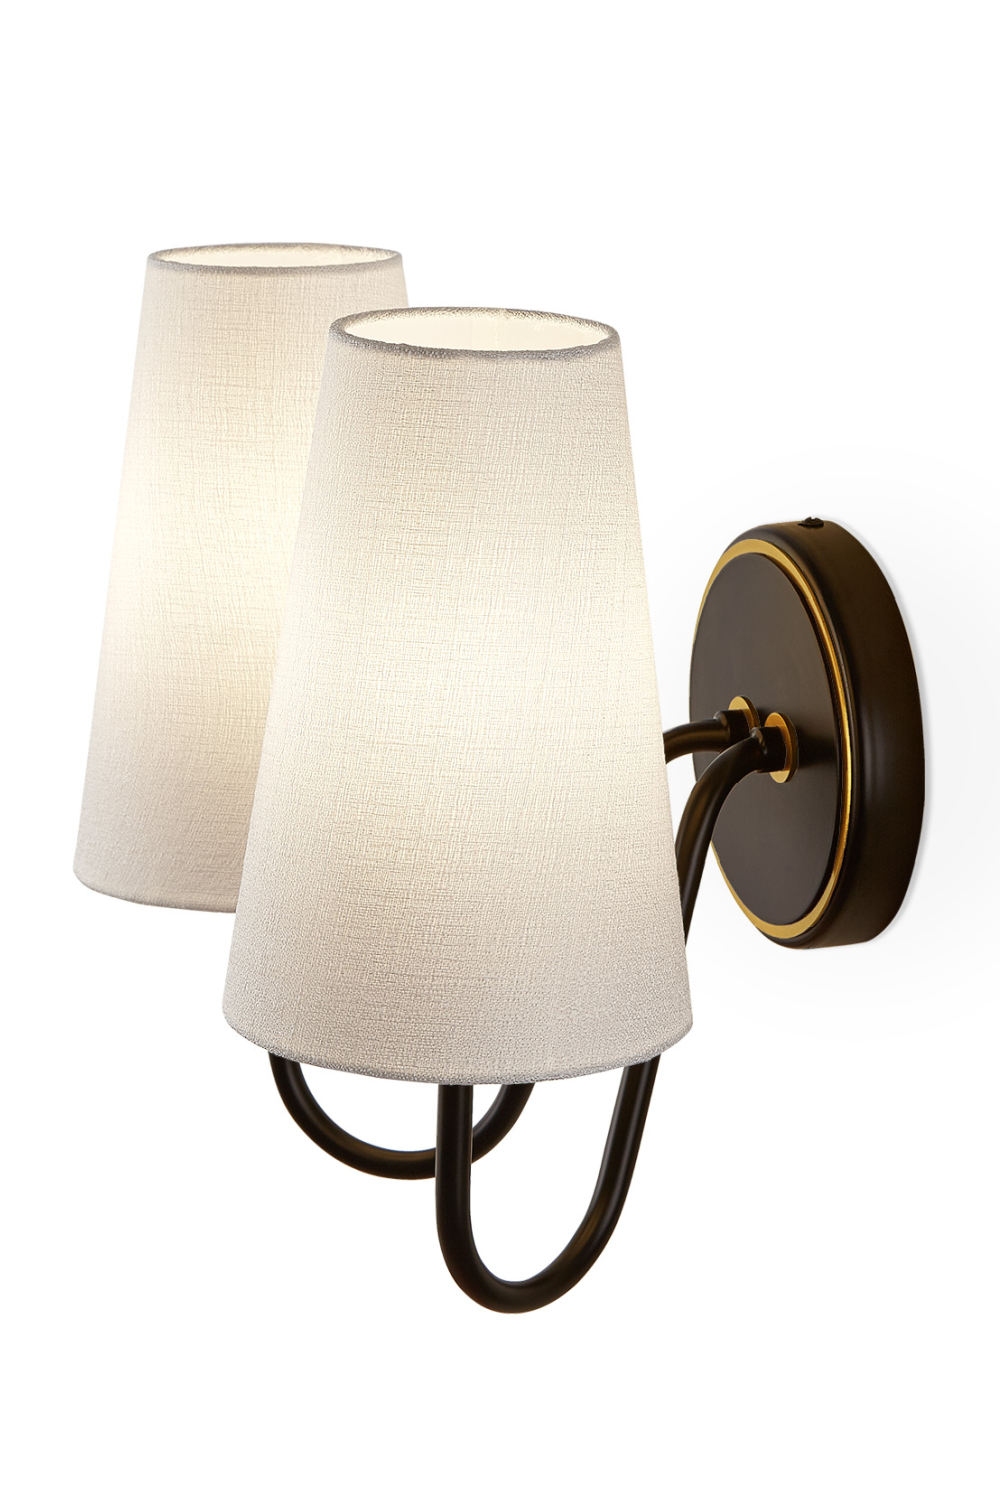 White Linen Wall Lamp | Liang & Eimil Gildan | Oroa.com